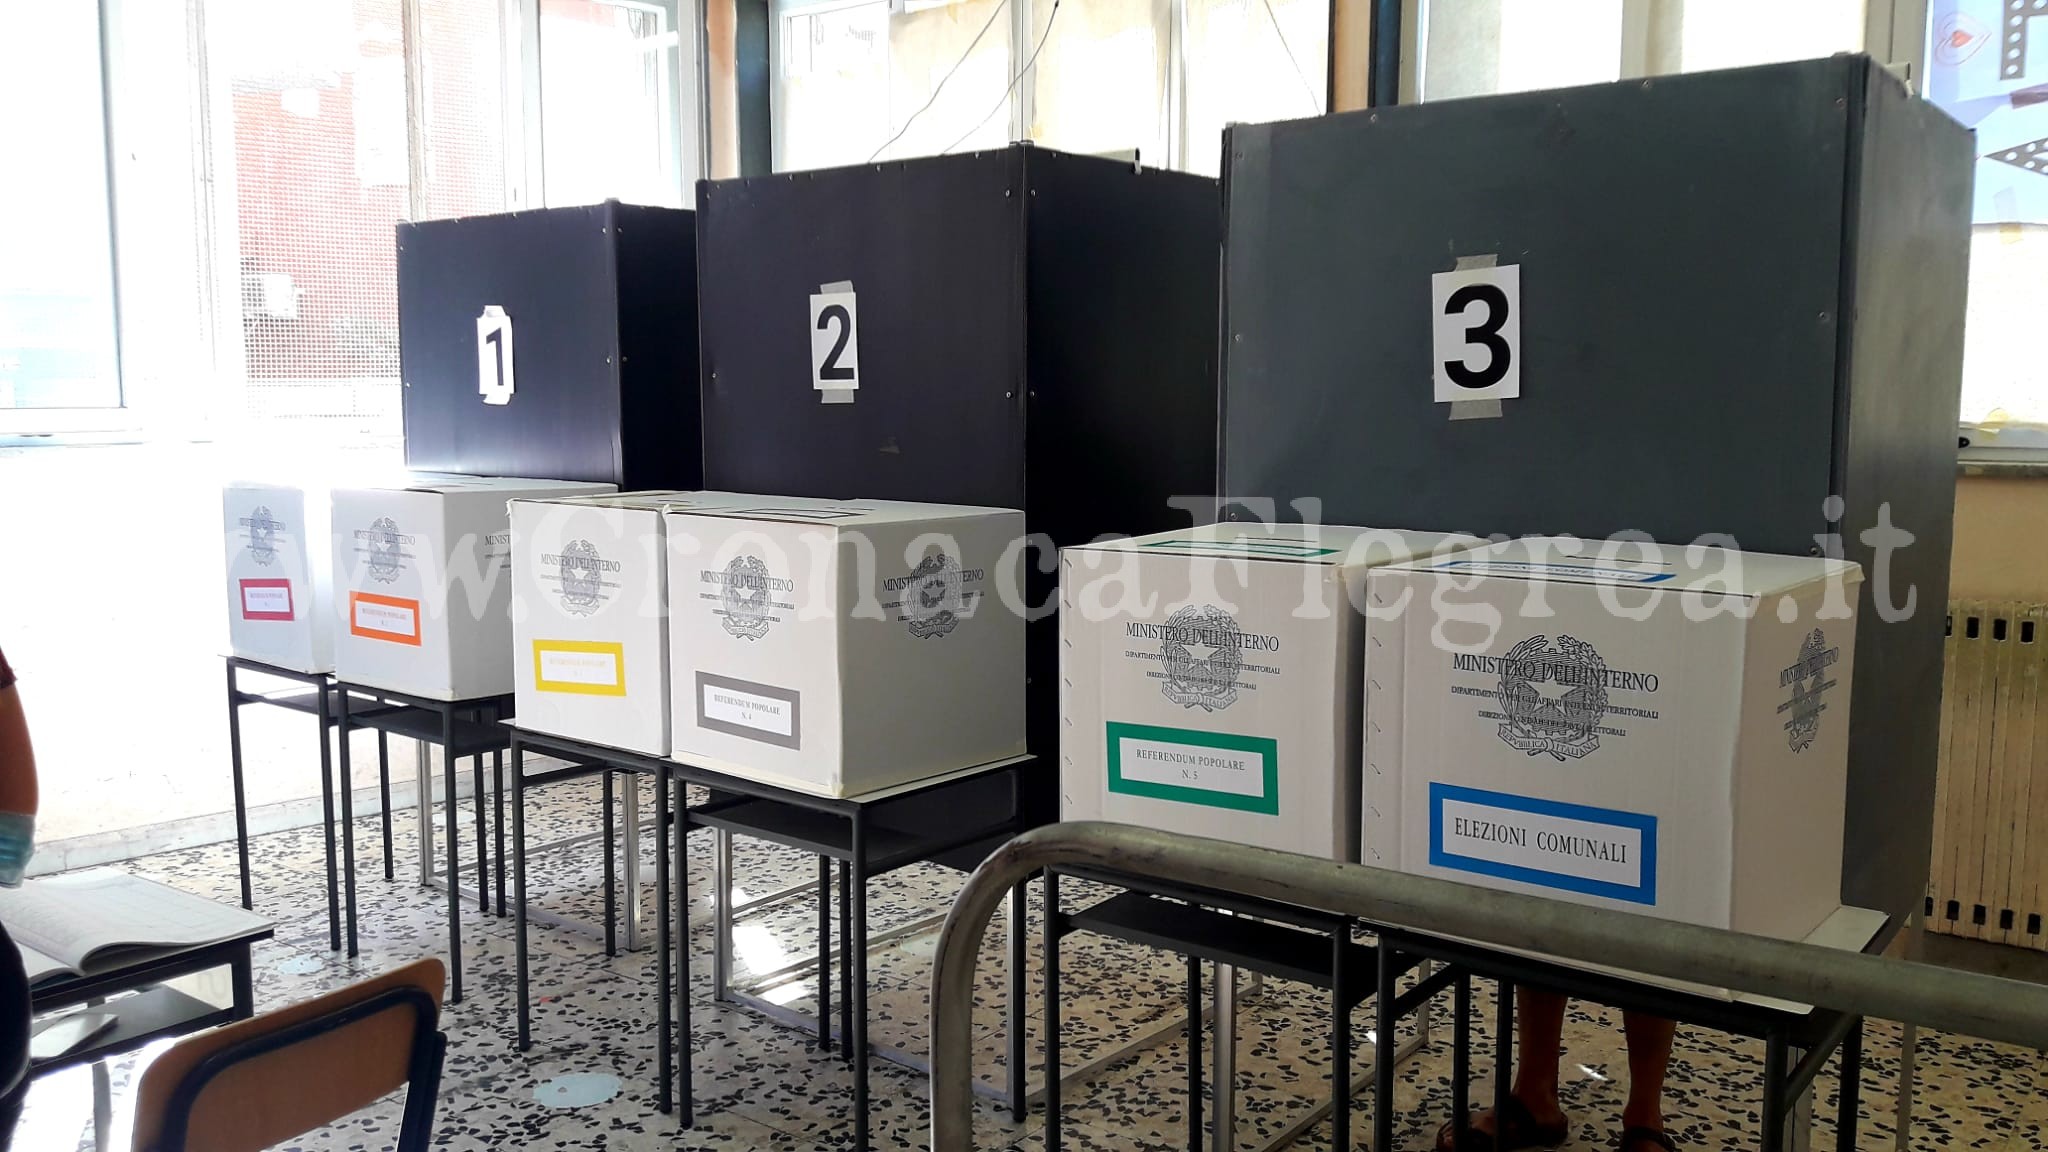 Si vota a Pozzuoli: chiamate alle urne oltre 60mila persone